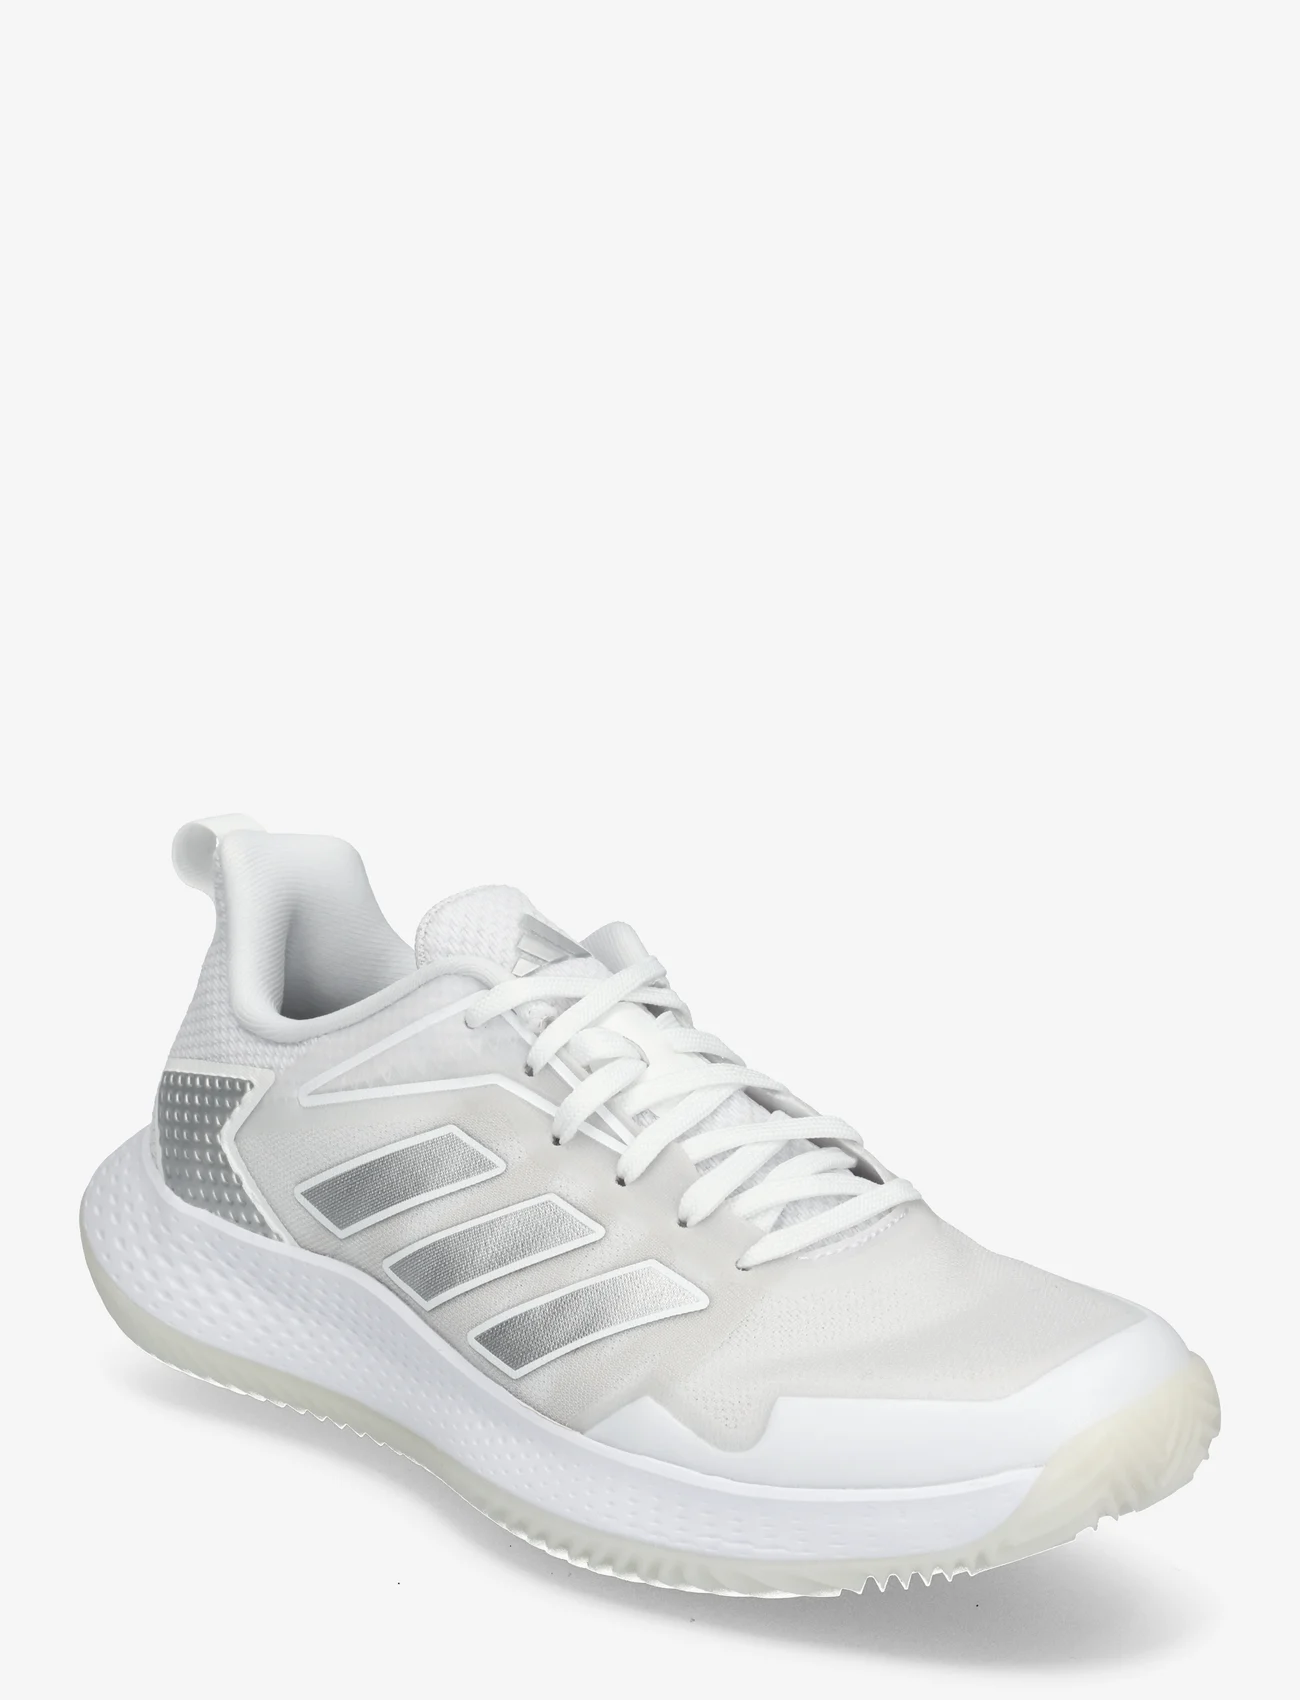 adidas Performance - DEFIANT SPEED W CLAY - rakečių sporto batai - 000/white - 0